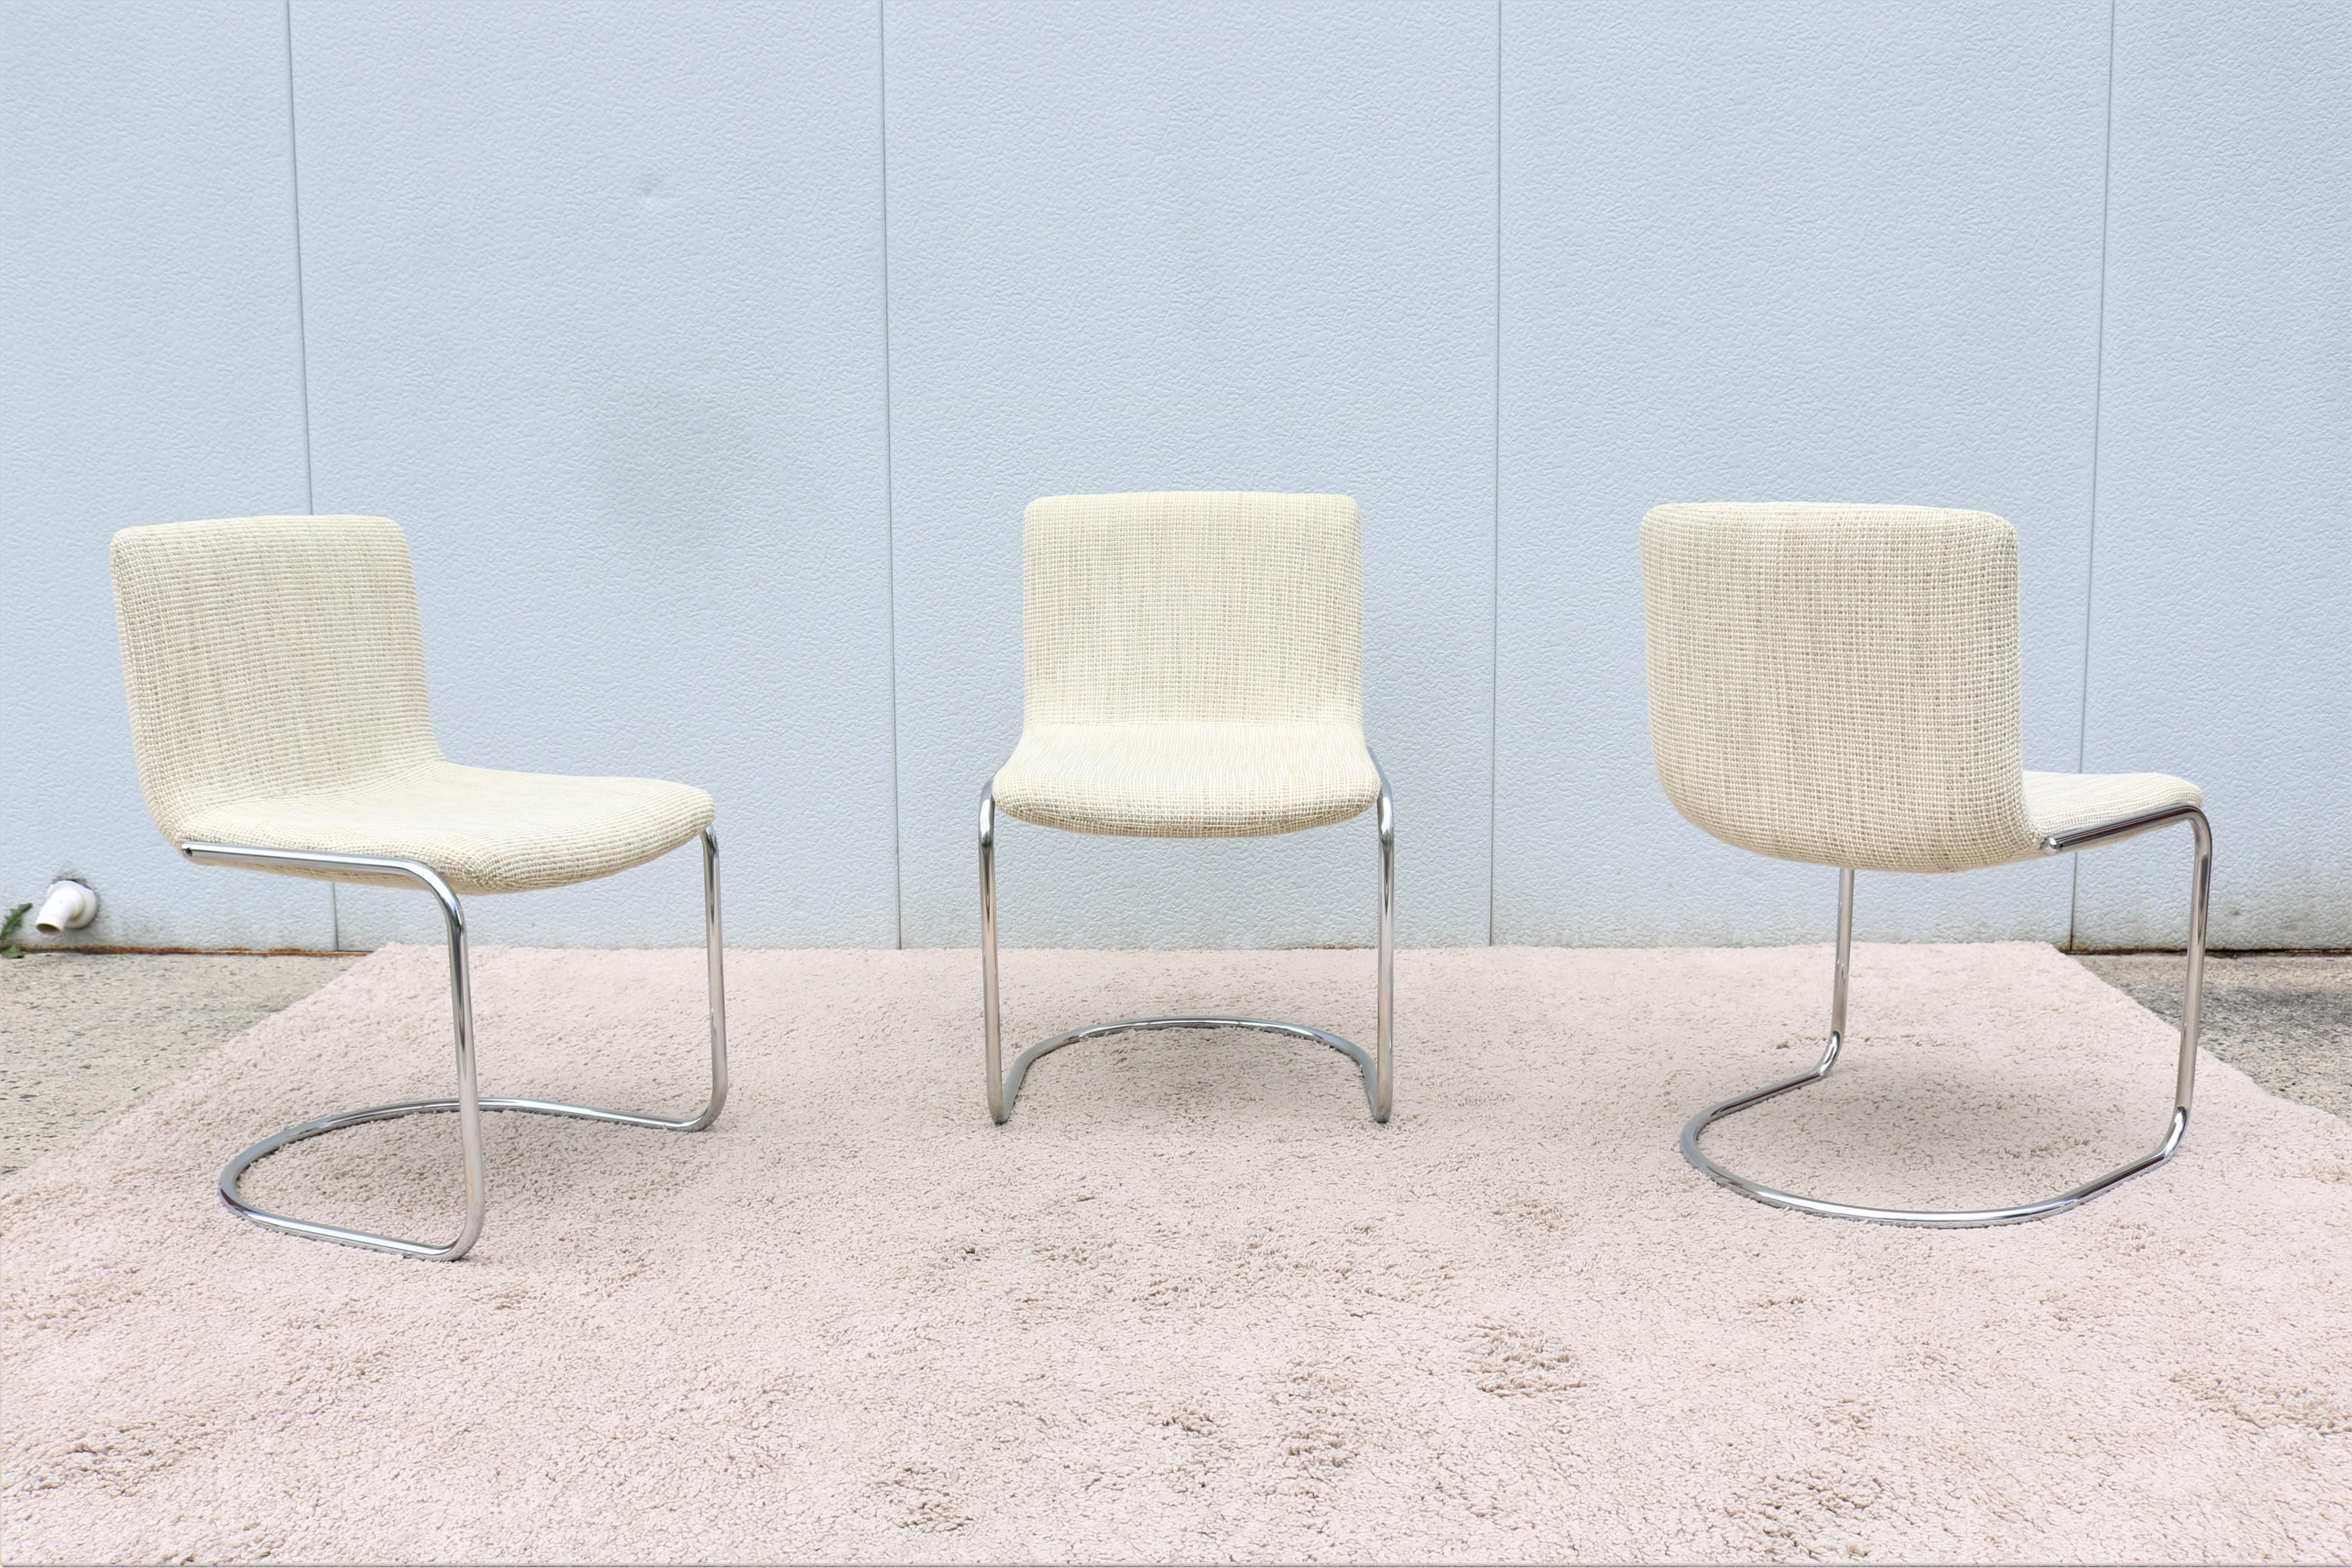 Wunderschönes 1970er Mid-Century Modern Set mit 3 Linsen-Esszimmerstühlen, entworfen von Giovanni Offredi für Saporiti Italia im Jahr 1968.
Der Stuhl Lens gehört zu den Klassikern der Saporiti Collection'S. Das Rohrgestell verleiht ihm ein